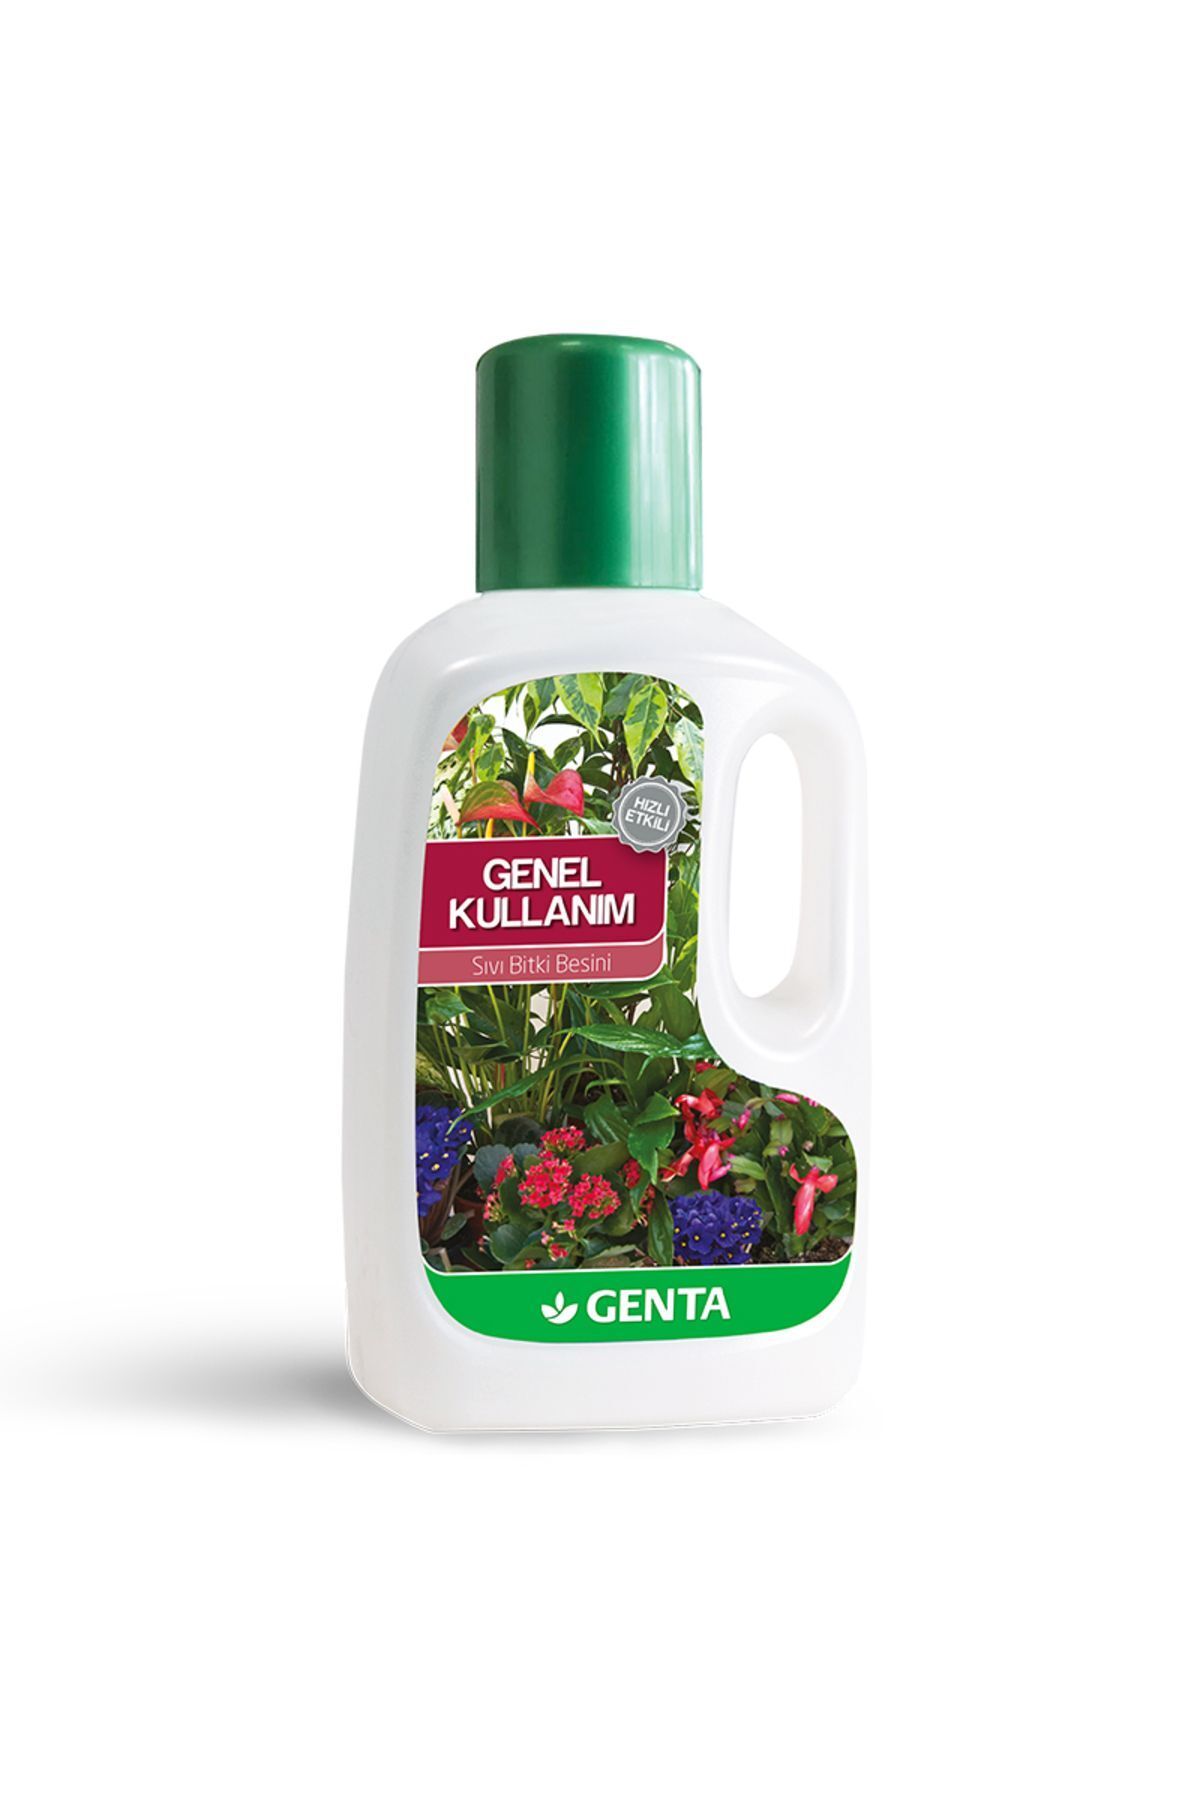 Genta Genel Kullanım Sıvı Bitki Besini Sıvı Gübre 500 ml